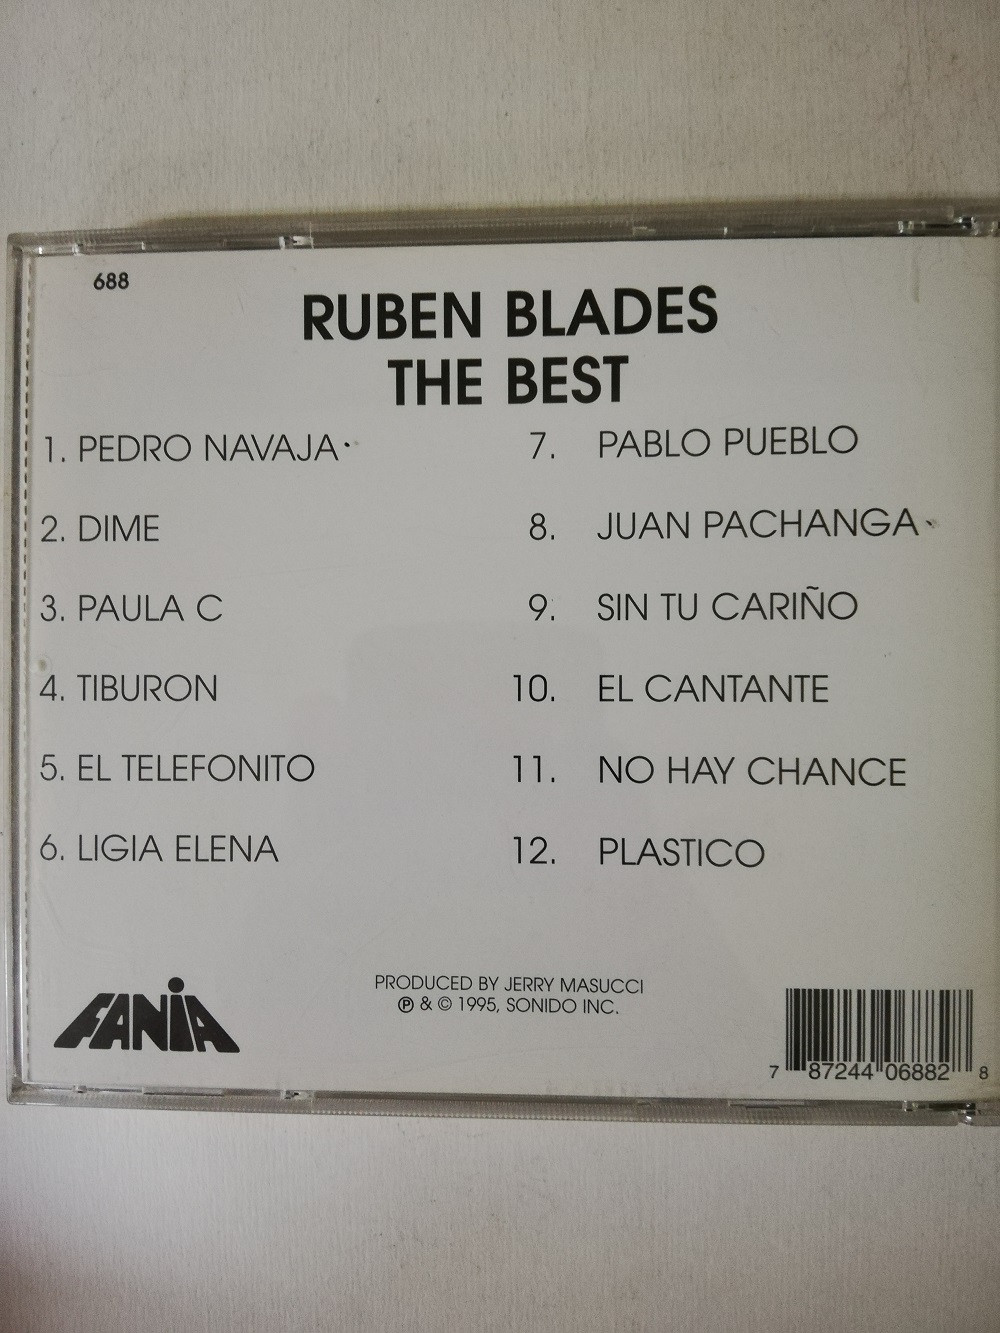 Imagen CD RUBEN BLADES - THE BEST 2